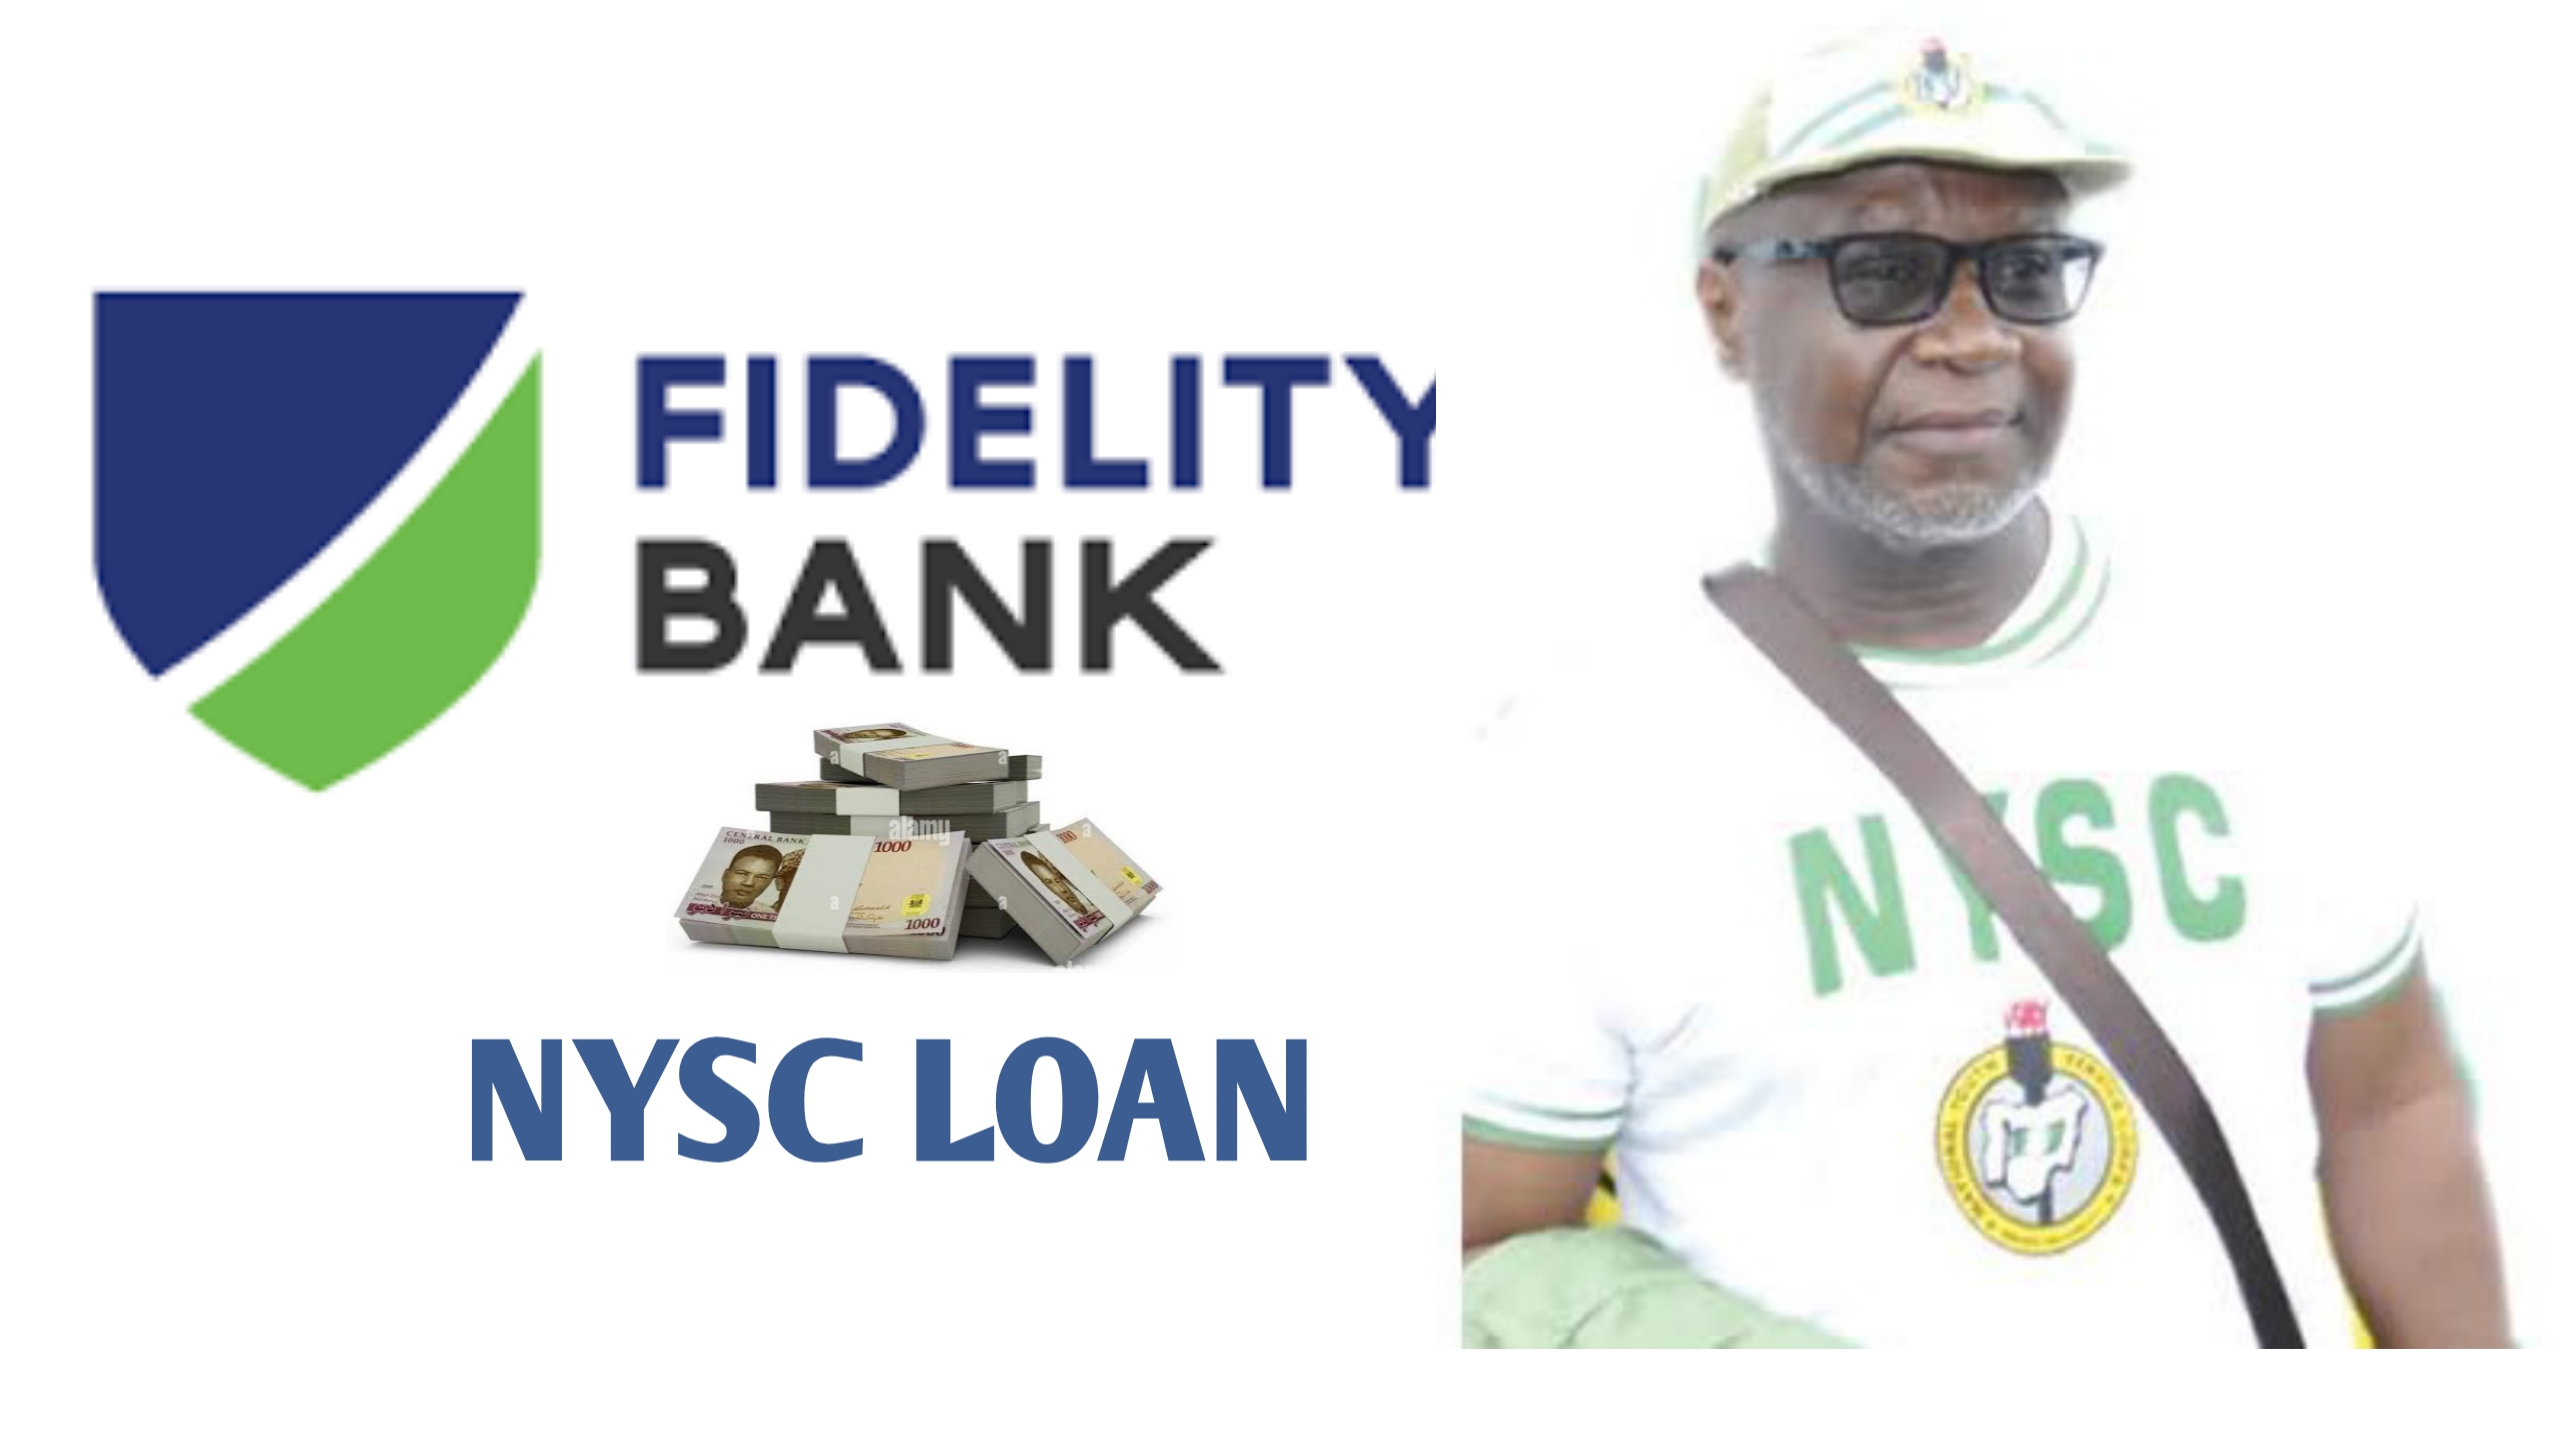 Fidelity Bank NYSC Loan